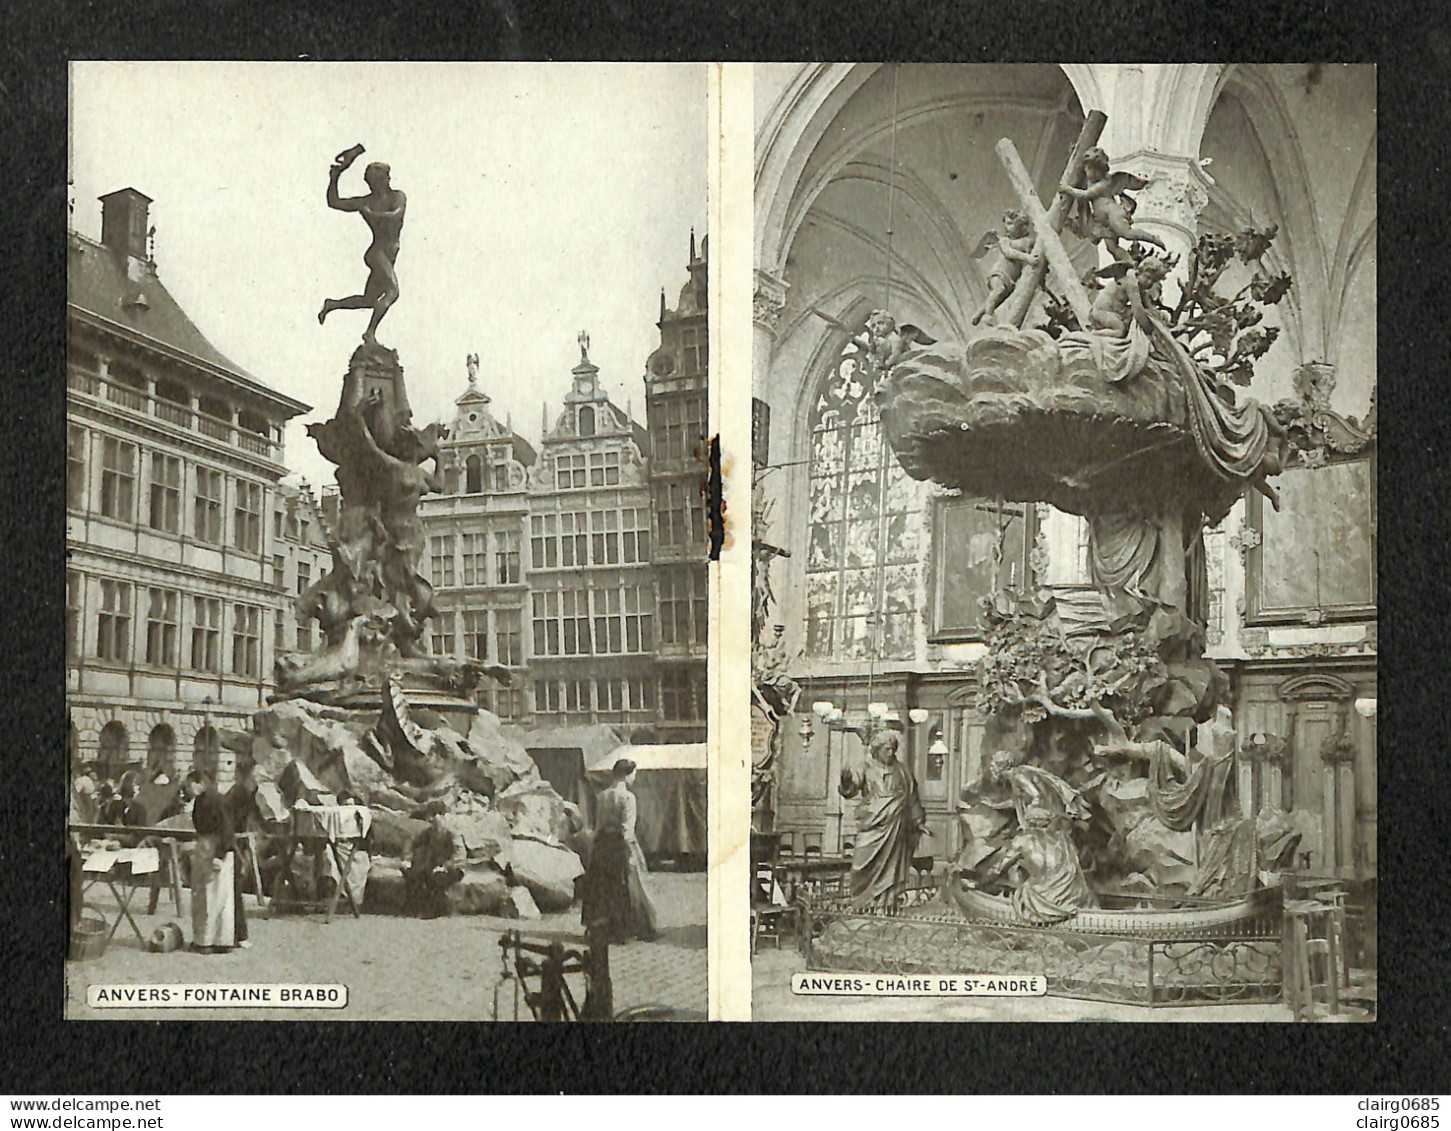 BELGIQUE - ANVERS - Souvenir d'Anvers - Carte-Lettre (8 photos à l'intérieur)